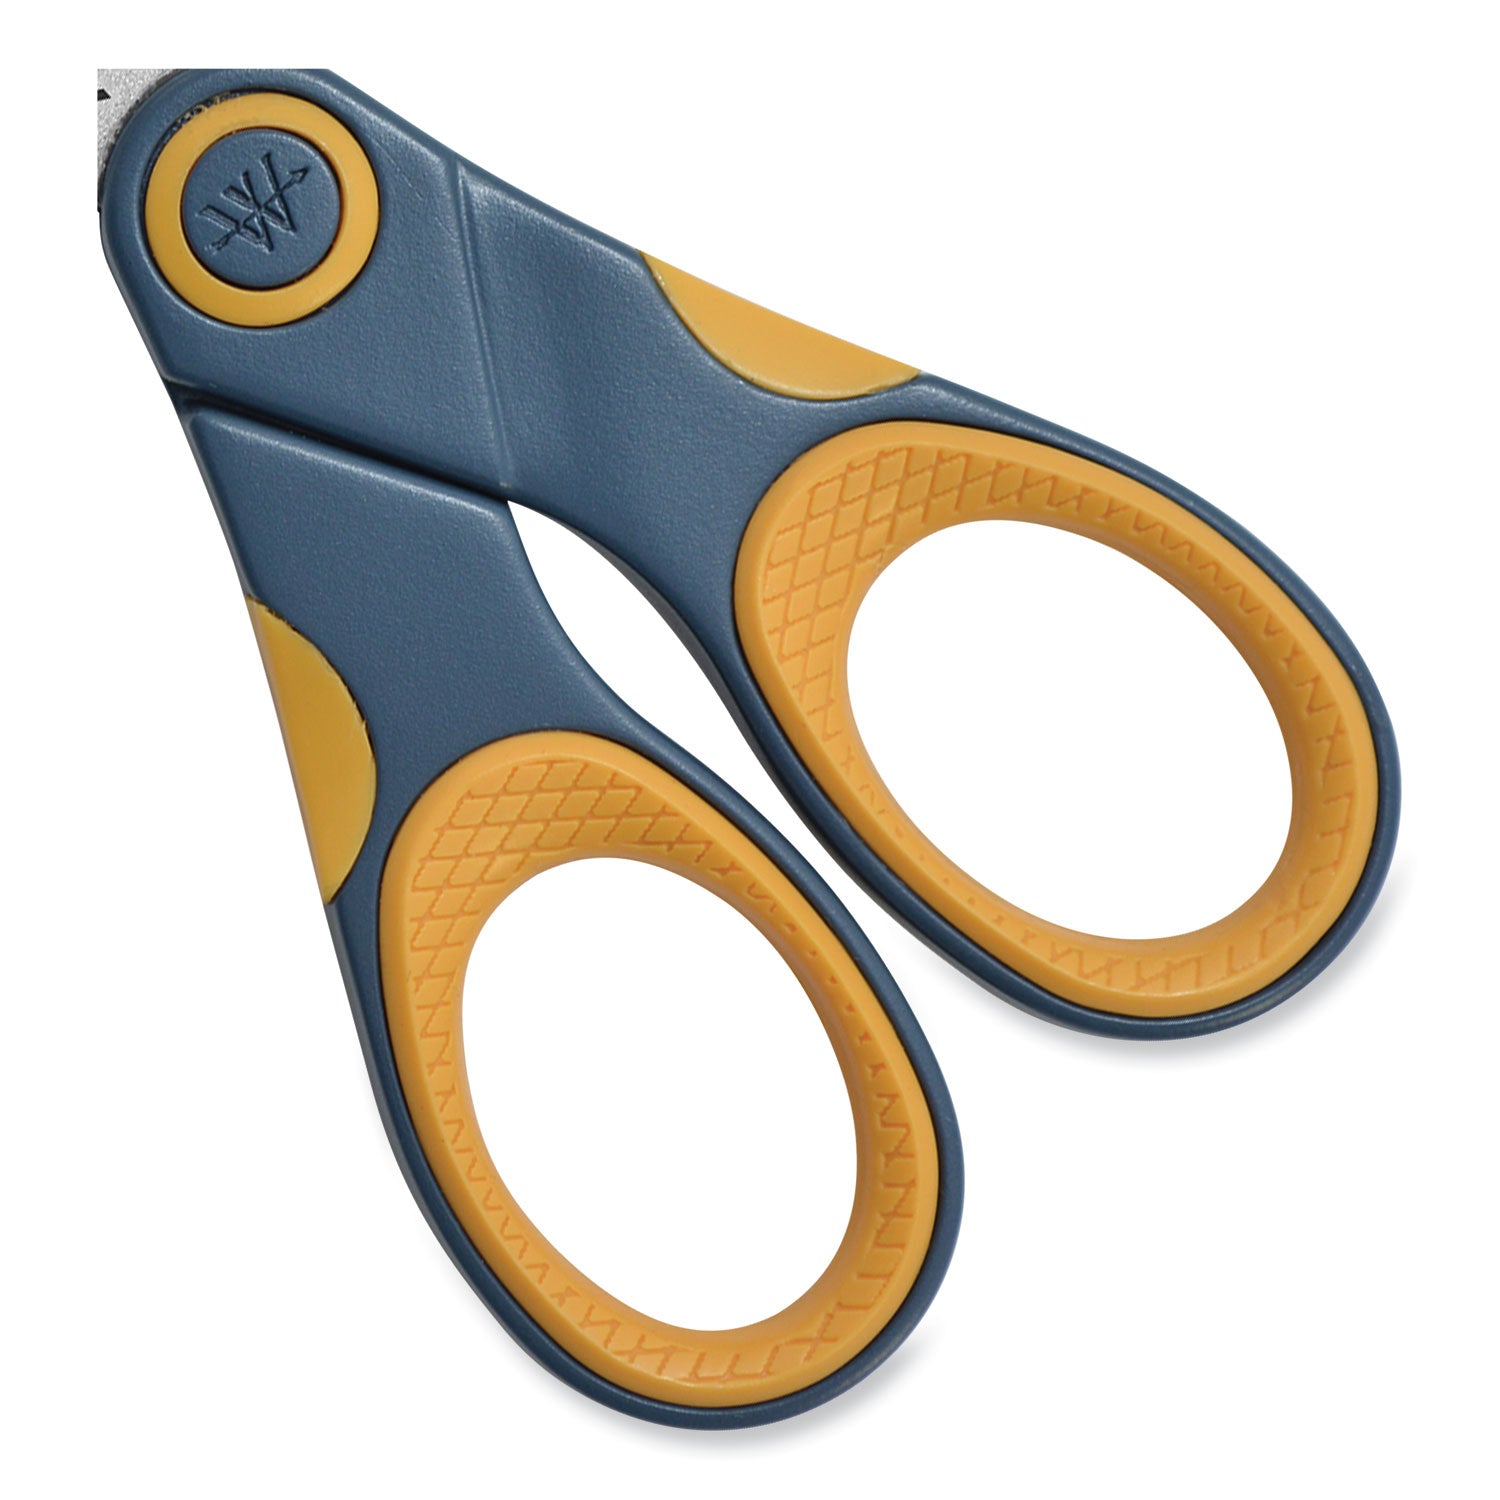 titanium-bonded-scissors-5-long-gray-orange-straight-handle_wtc14881 - 7